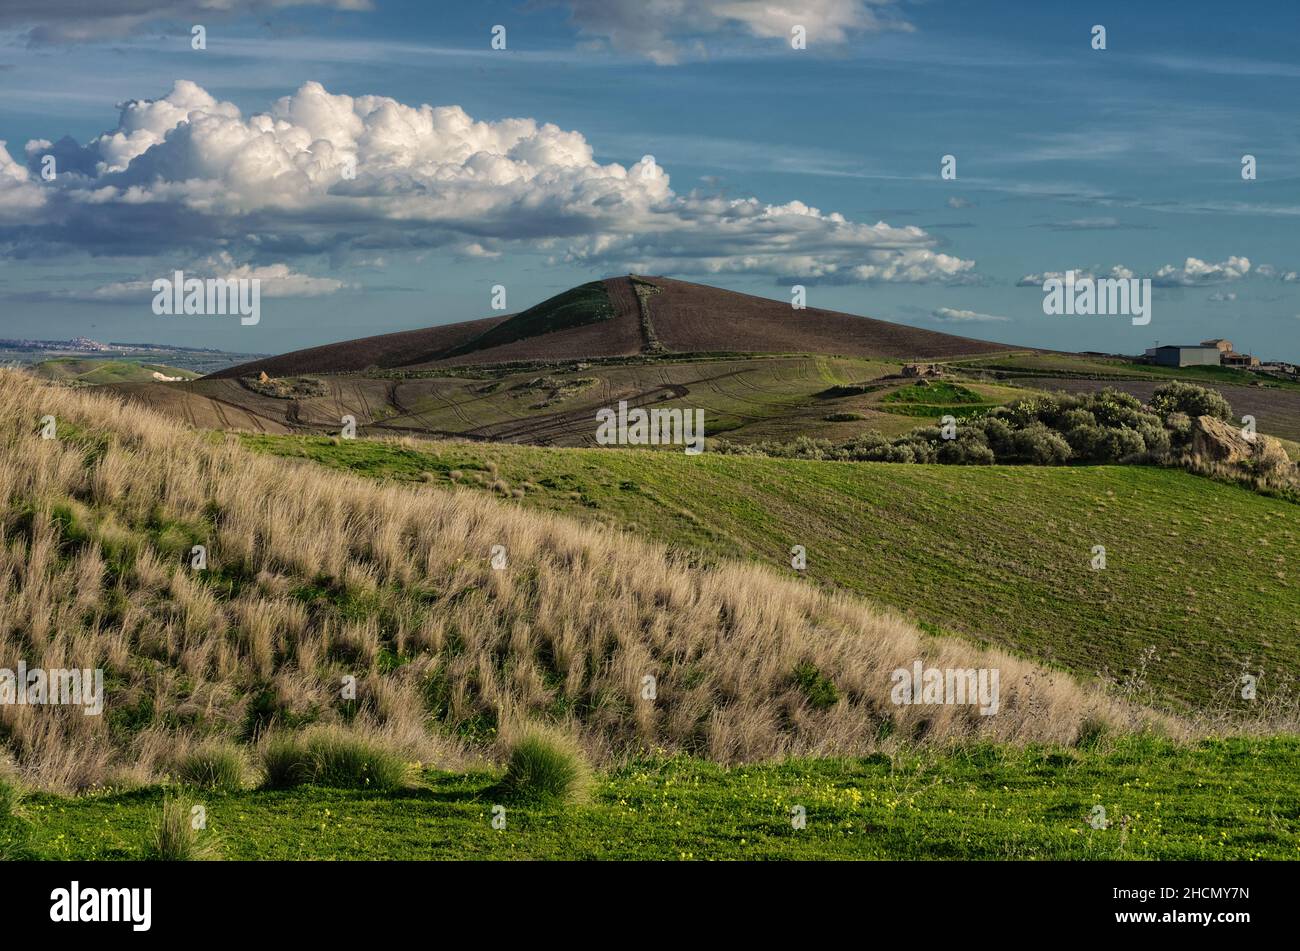 colore invernale del paesaggio rurale in sicilia paesaggio nuvoloso e agricoltura collinare Foto Stock